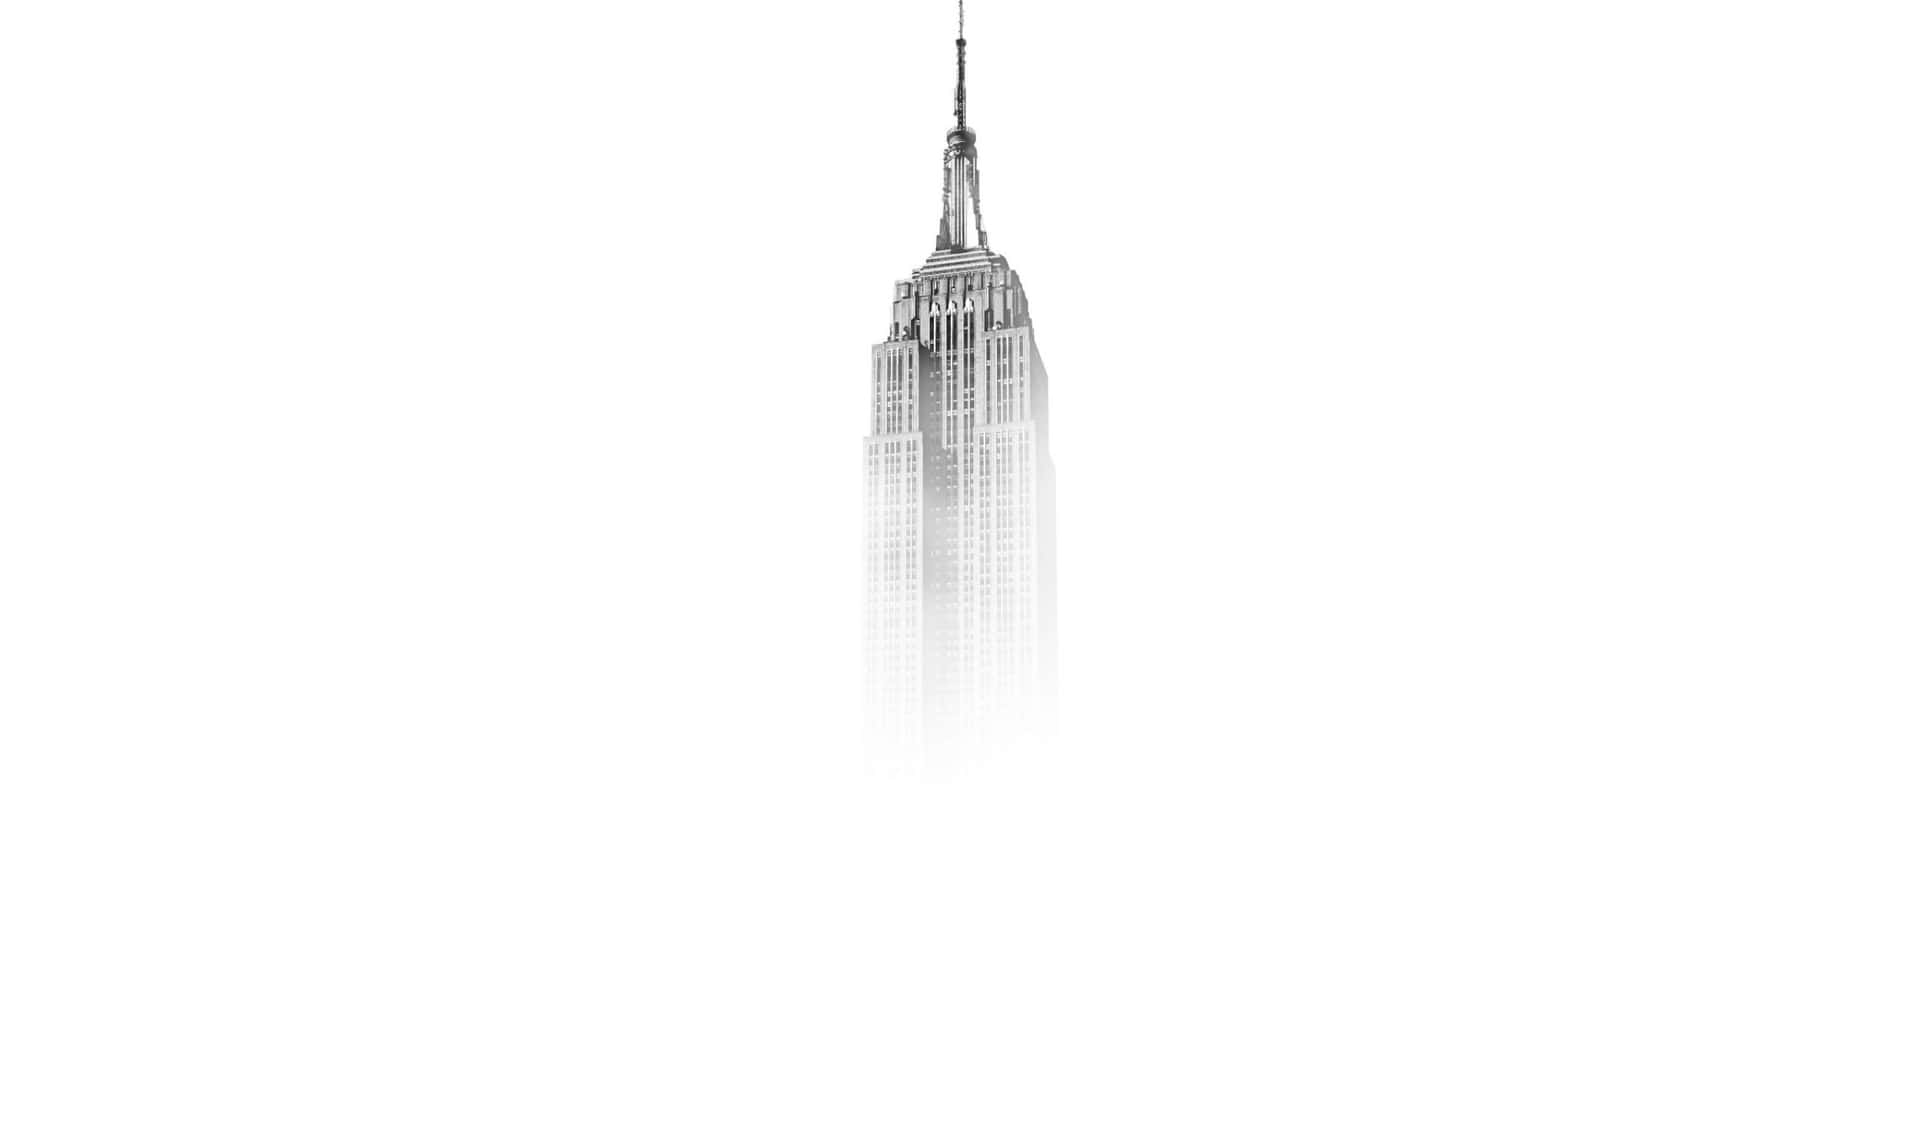 Elimponente Horizonte De Rascacielos Del Empire State Building En La Ciudad De Nueva York.